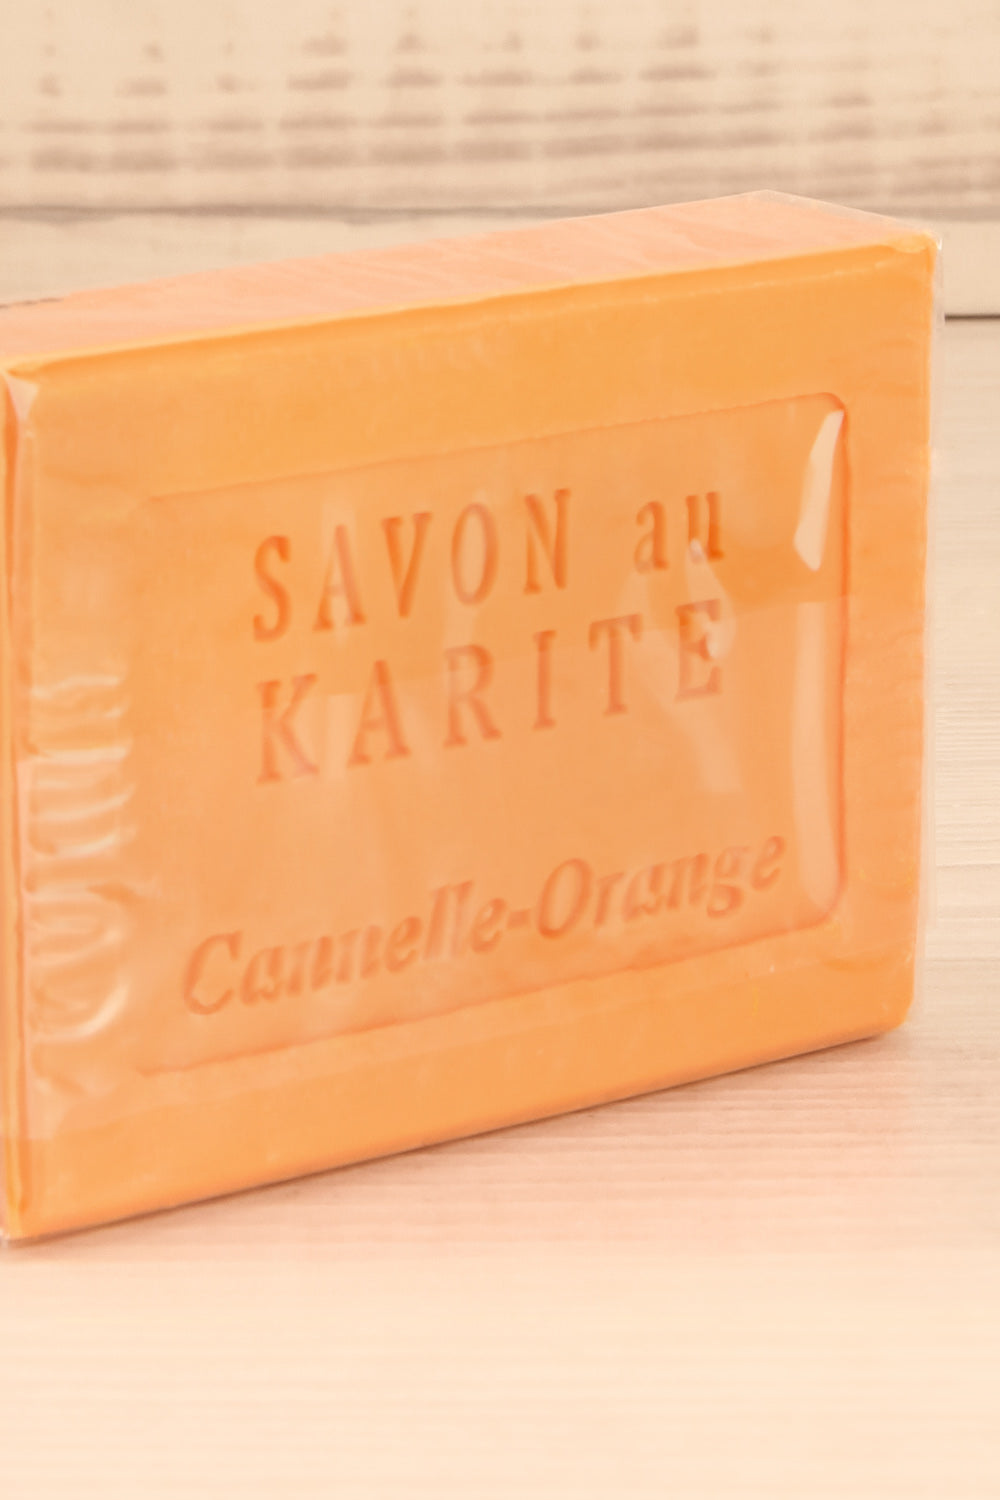 Savon au Karité Canelle-Orange Soap | La Petite Garçonne Chpt. 2 3